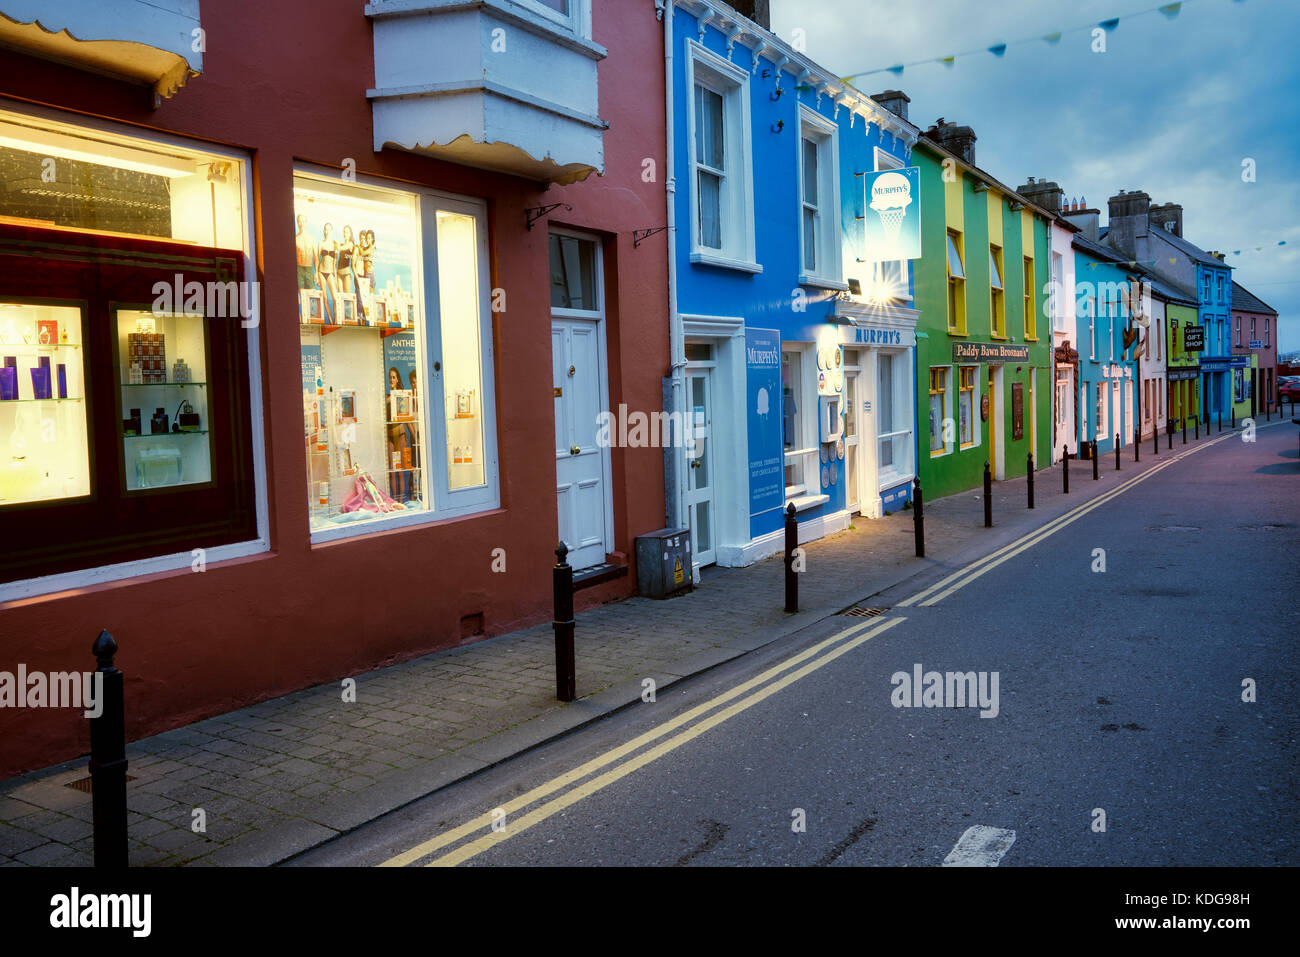 Façades colorées à Dingle, comté de Kerry, Irlande Banque D'Images